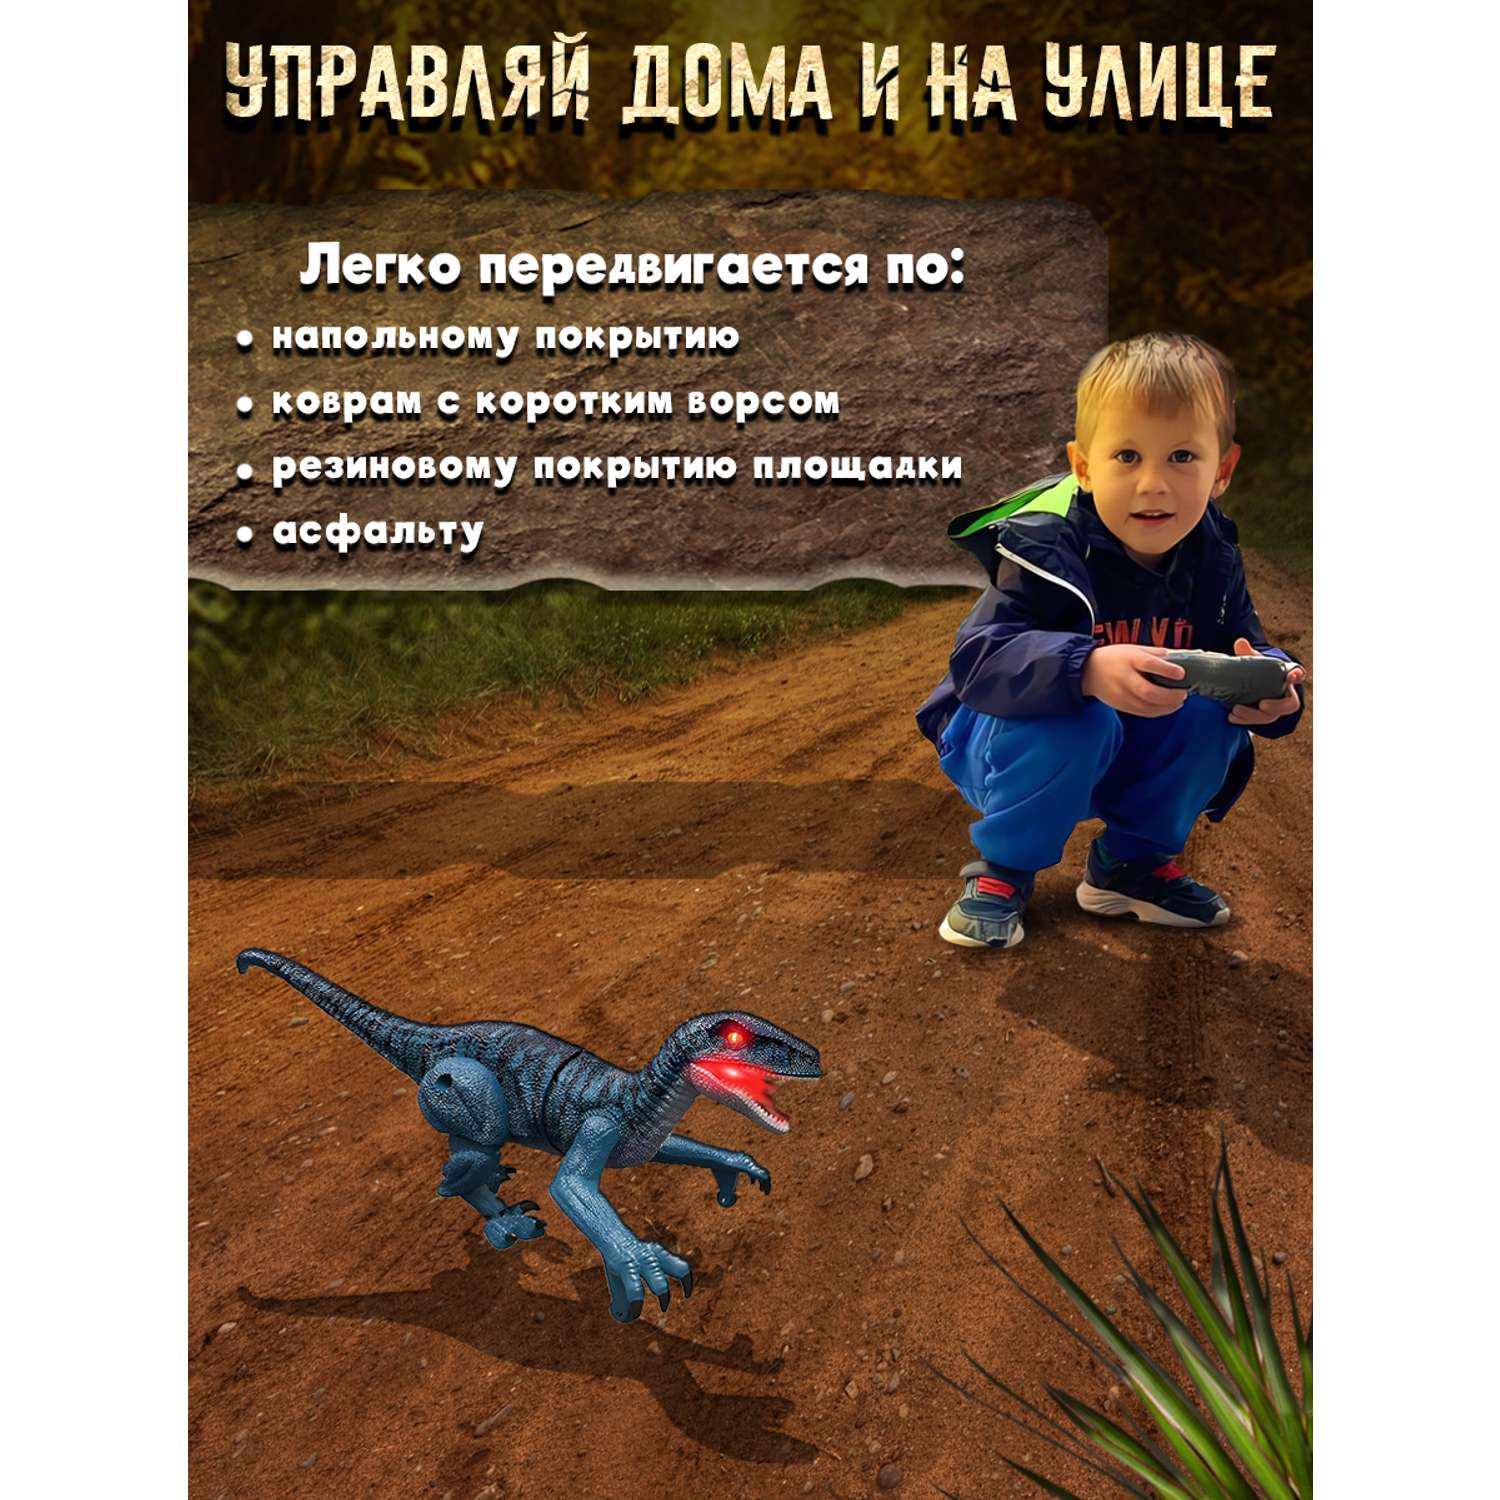 Интерактивные игрушки Винтик ходячий мини динозавр хищник со светодиодной подсветкой и звуком рева - фото 11